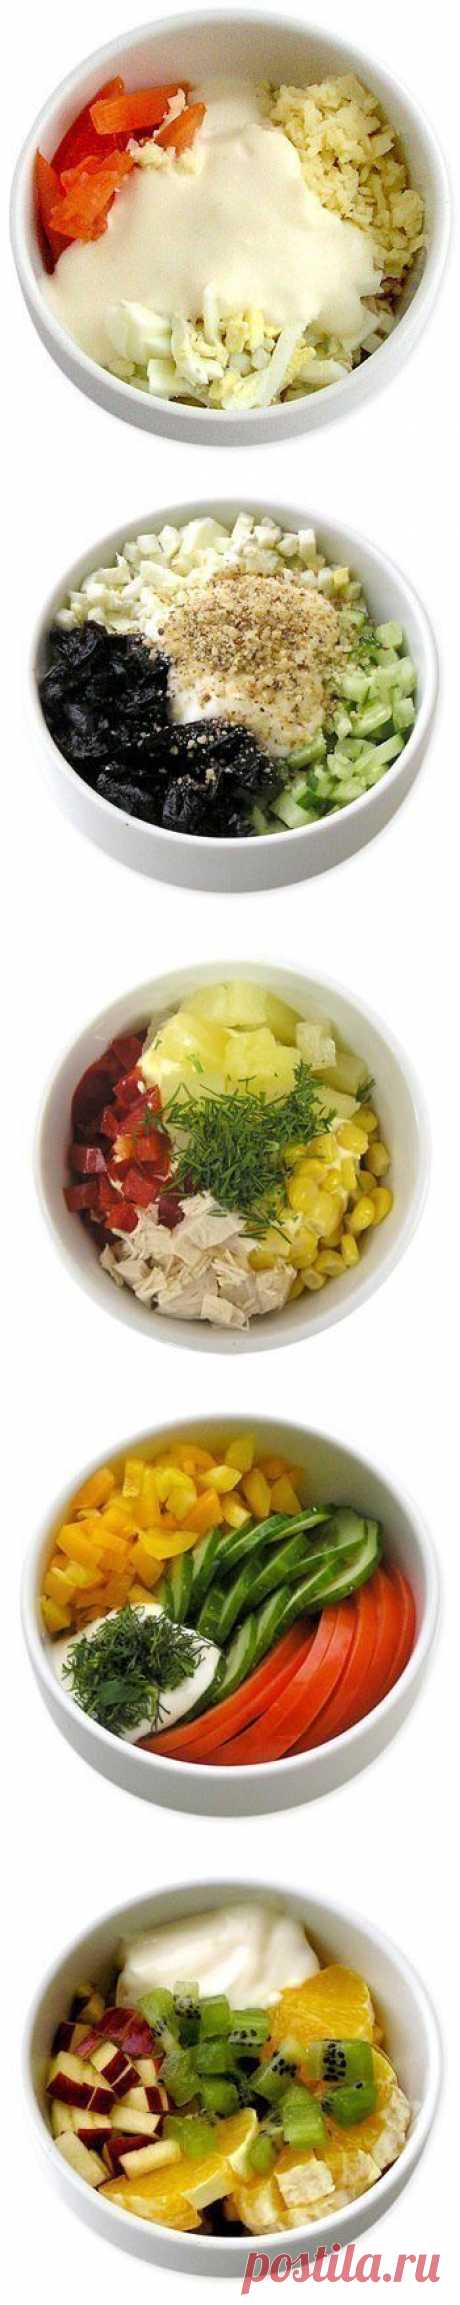 Рецепт дня: Мини - салатики (6 самых вкусных вариантов)